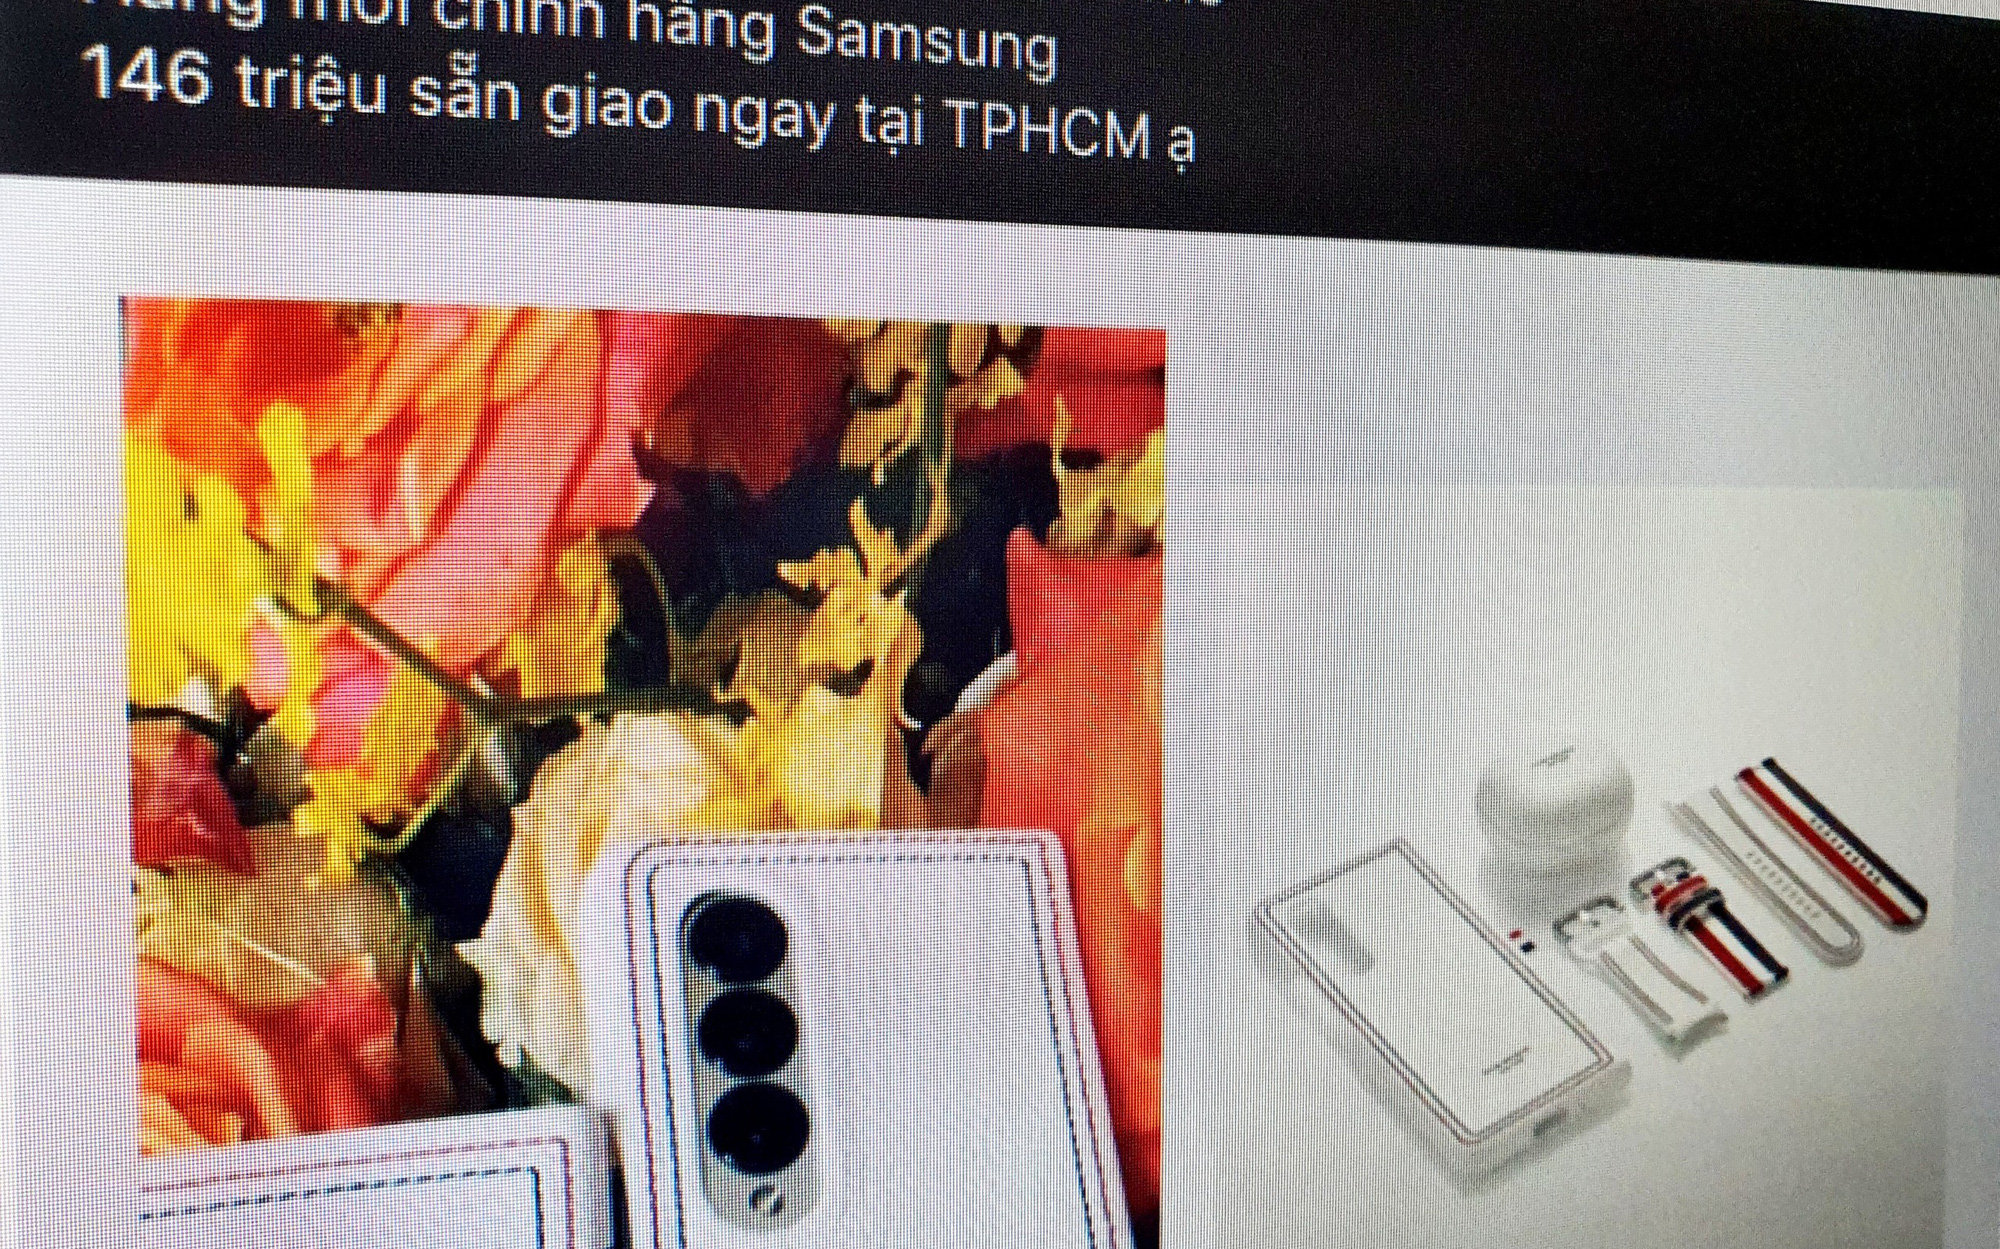 Smartphone hàng "Limited" của Samsung bị đẩy giá lên 150 triệu đồng vẫn không có máy để bán tại Việt Nam